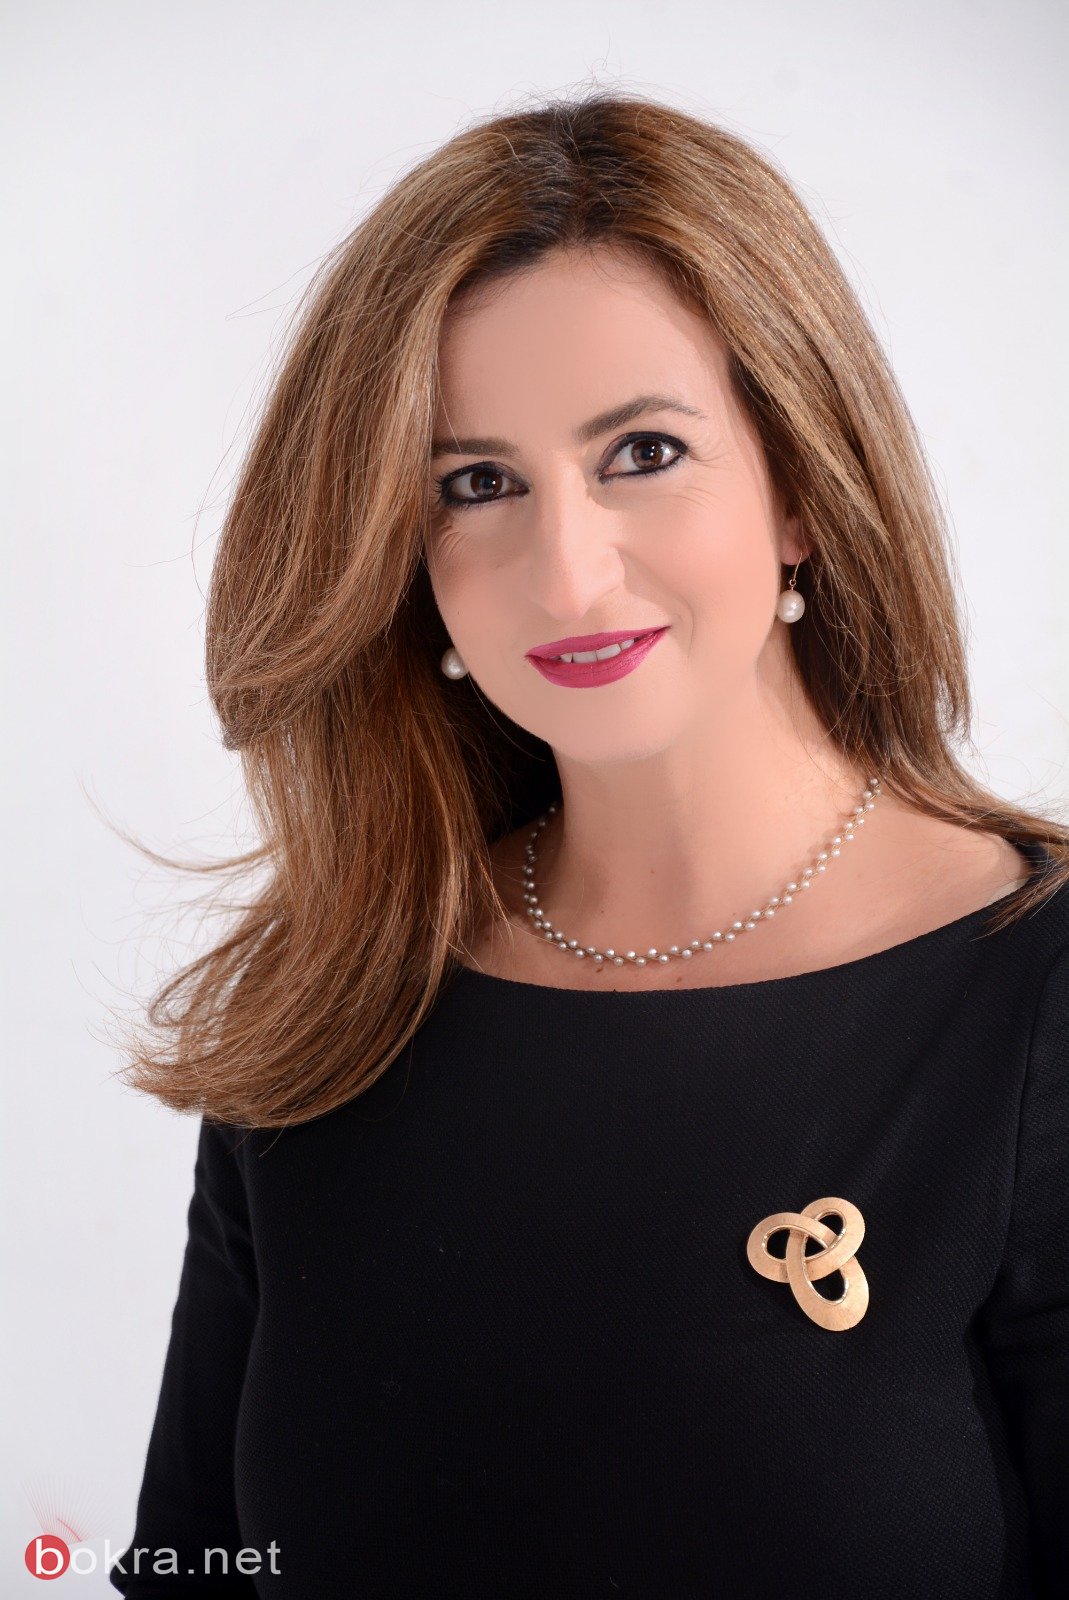 غيداء ريناوي تتحدث لـ"بكرا" عن ضرورة مشاركة المرأة العربية في مؤتمر سيدات الاعمال-1